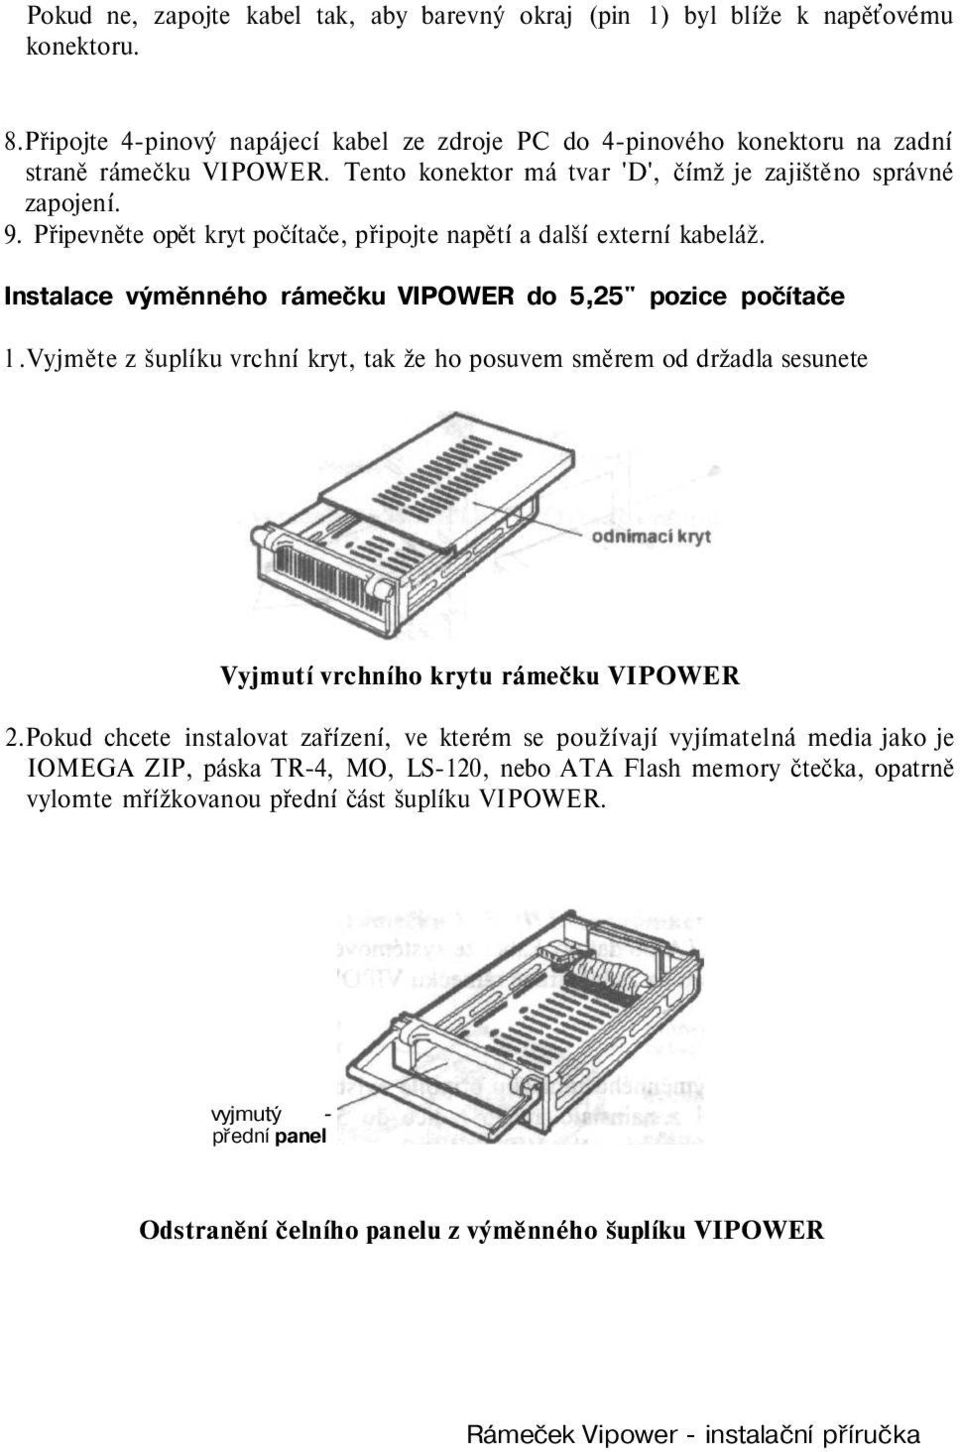 Instalace výměnného rámečku VIPOWER do 5,25" pozice počítače l.vyjměte z šuplíku vrchní kryt, tak že ho posuvem směrem od držadla sesunete Vyjmutí vrchního krytu rámečku VIPOWER 2.